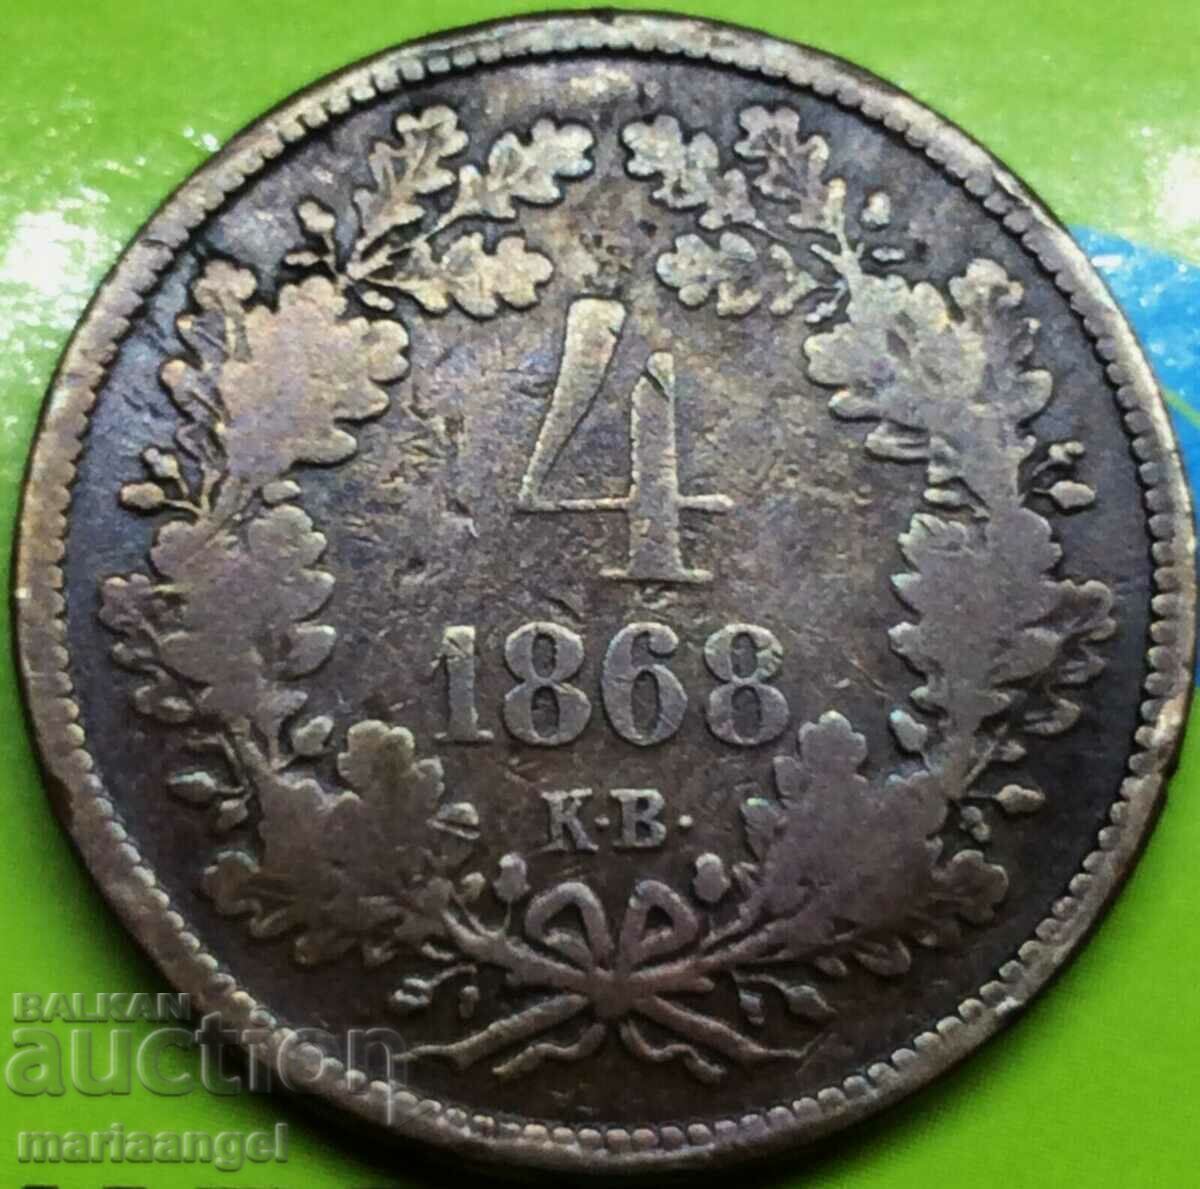 Hungary 4 Kreuzers 1868 KV Original 13.19g - quite rare